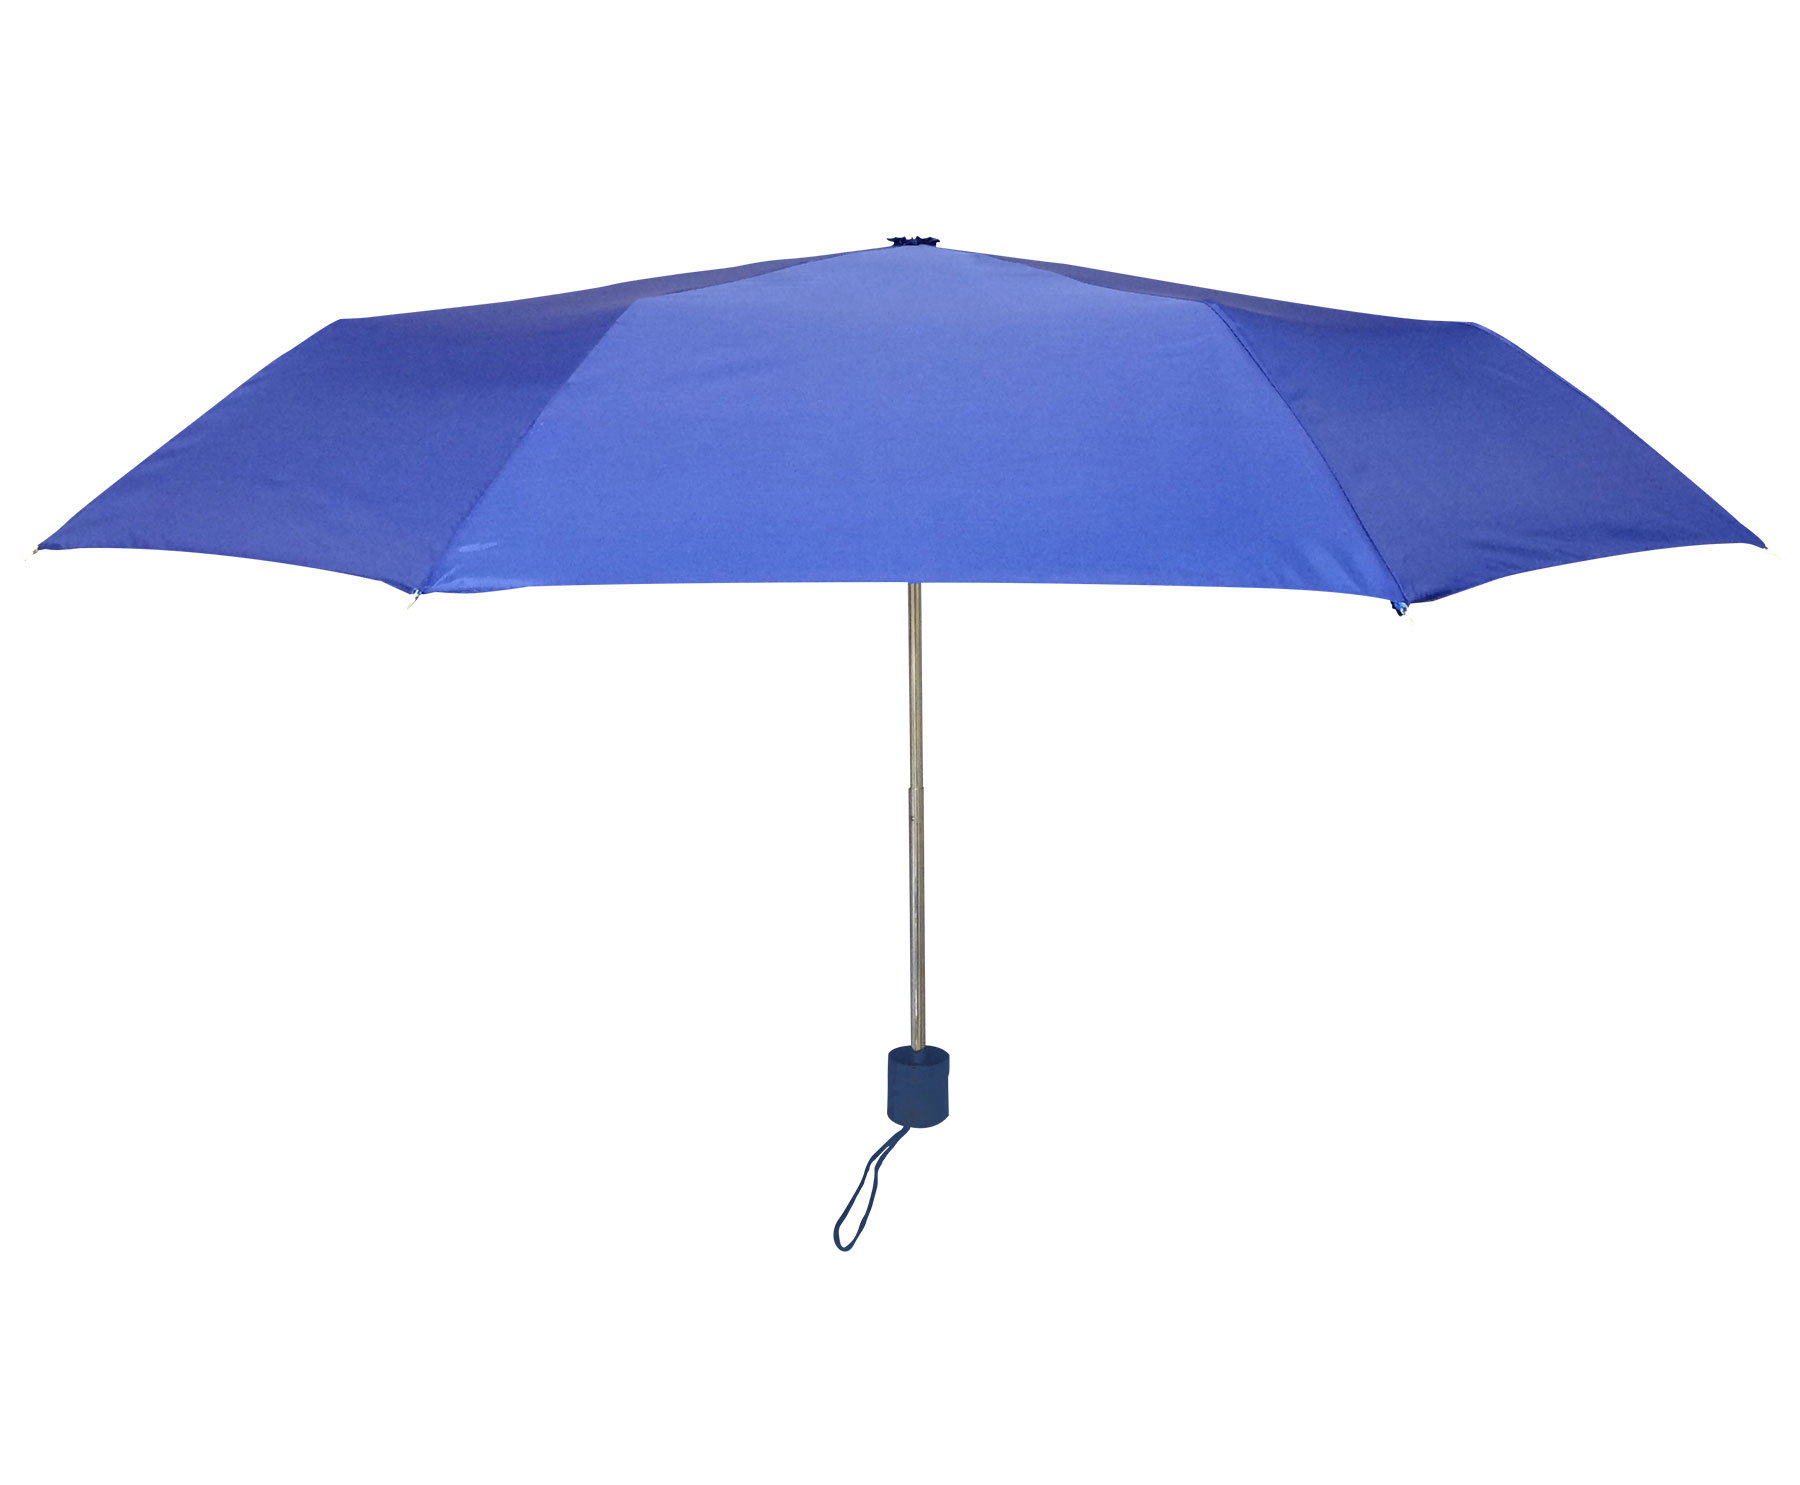 A202 - Raintec Umbrella